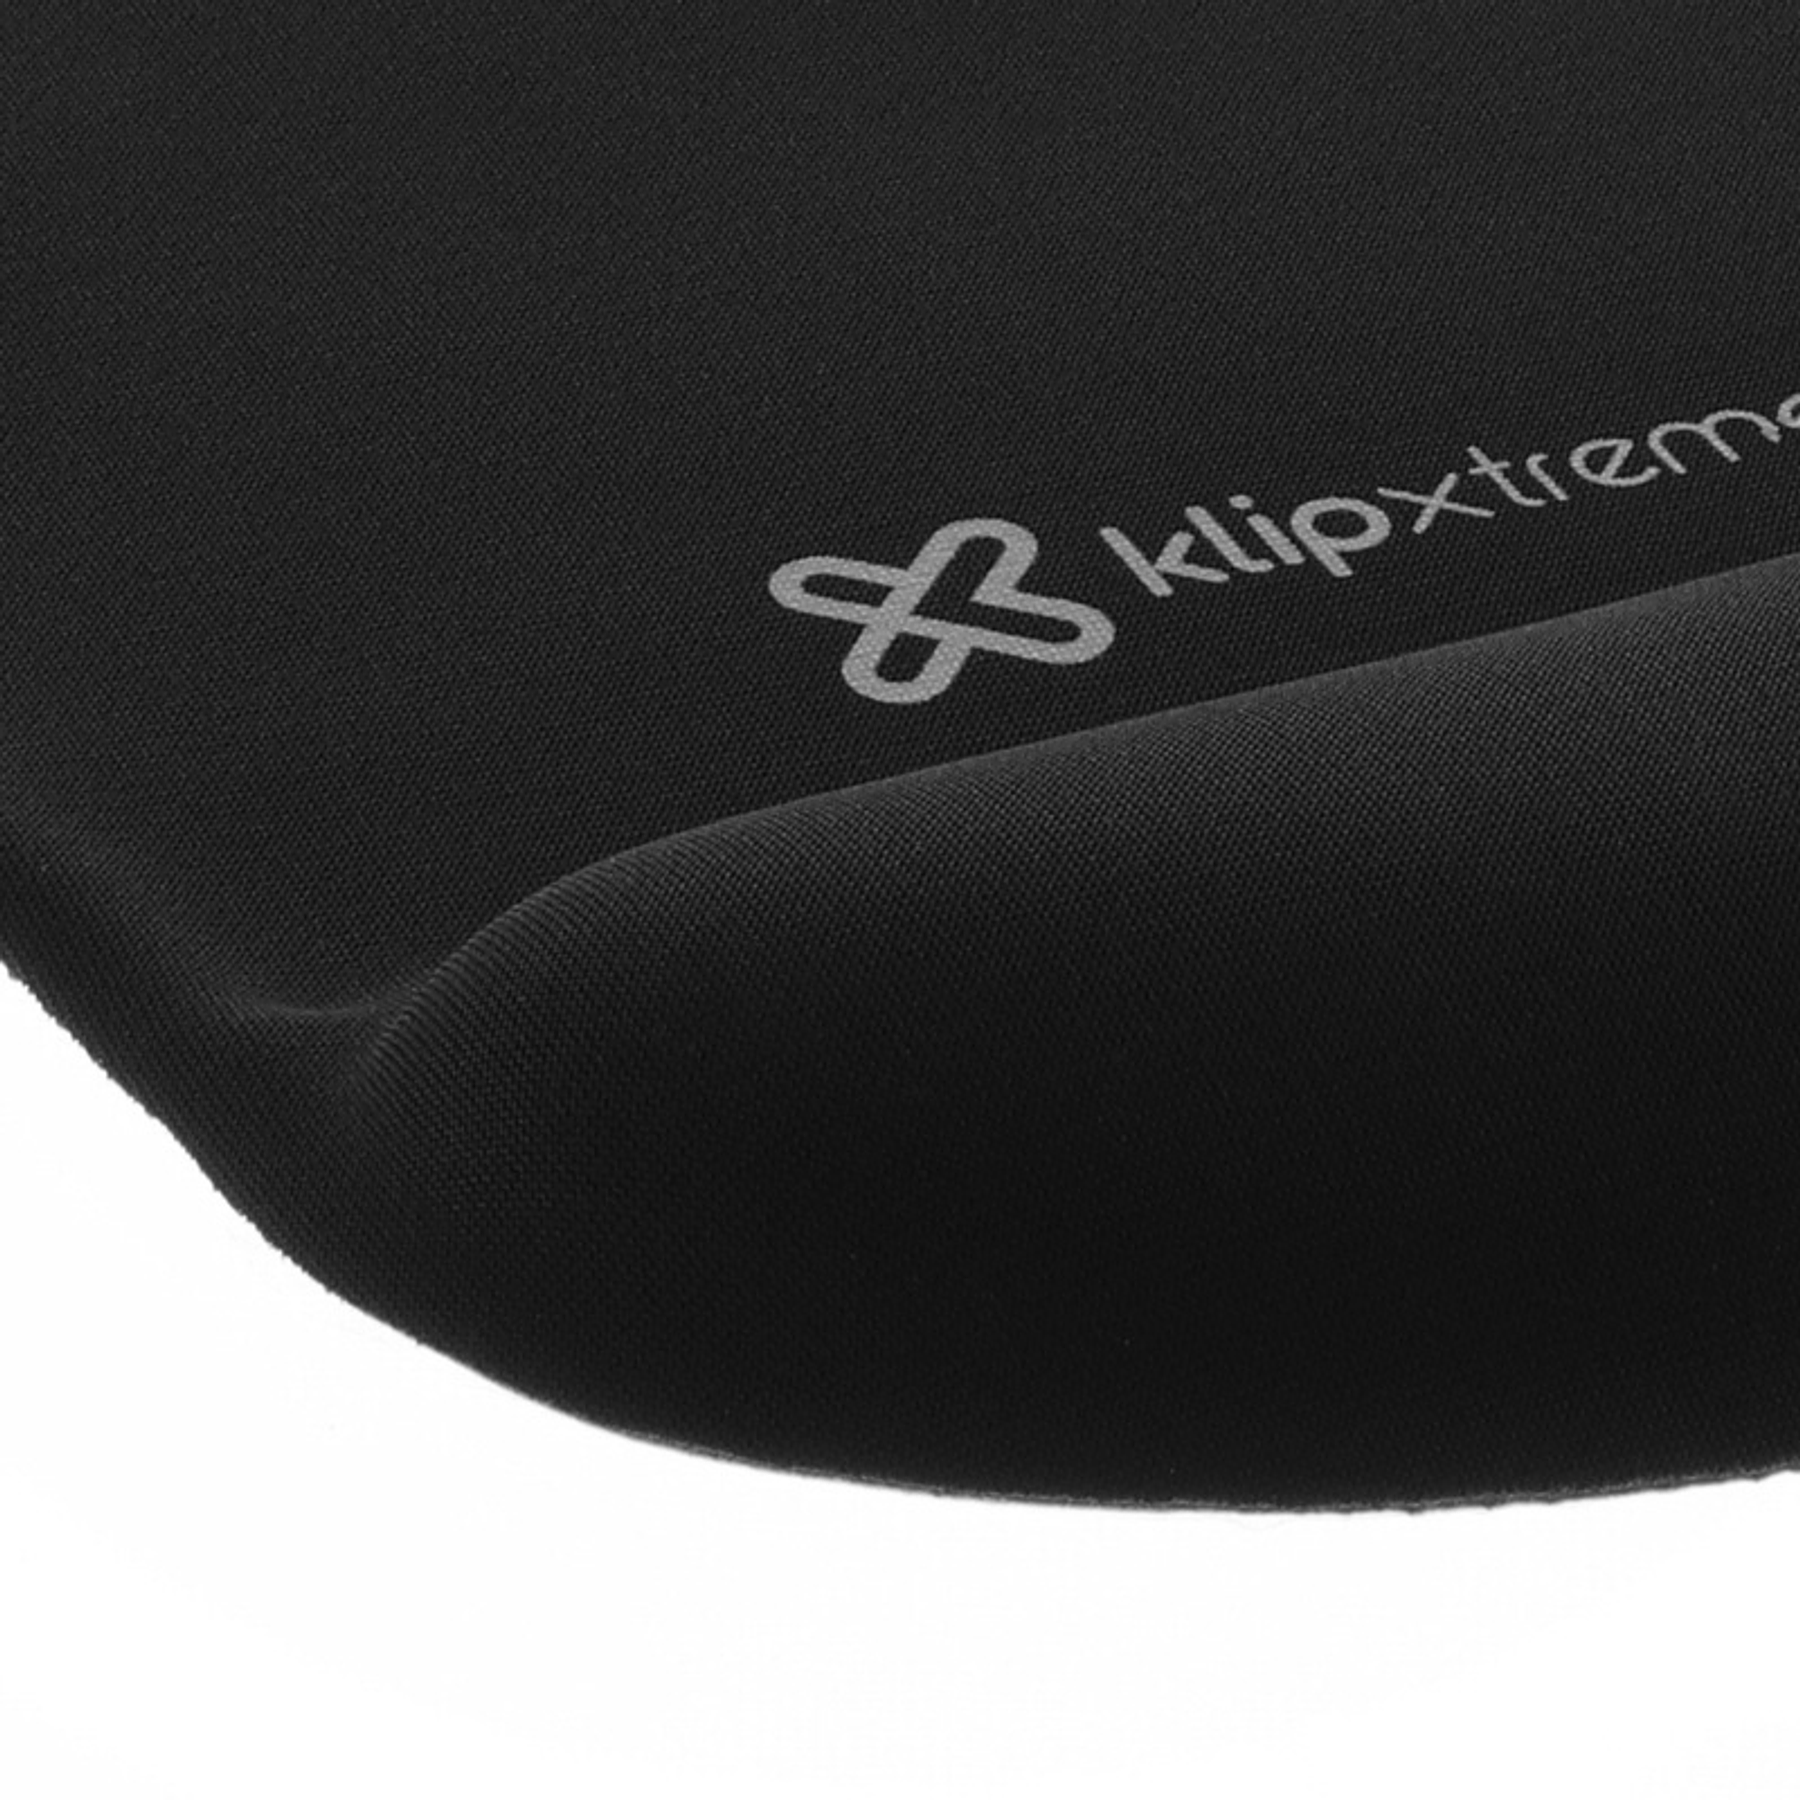 Klip Xtreme KMP-100B Mousepad Ergonomico Gel 